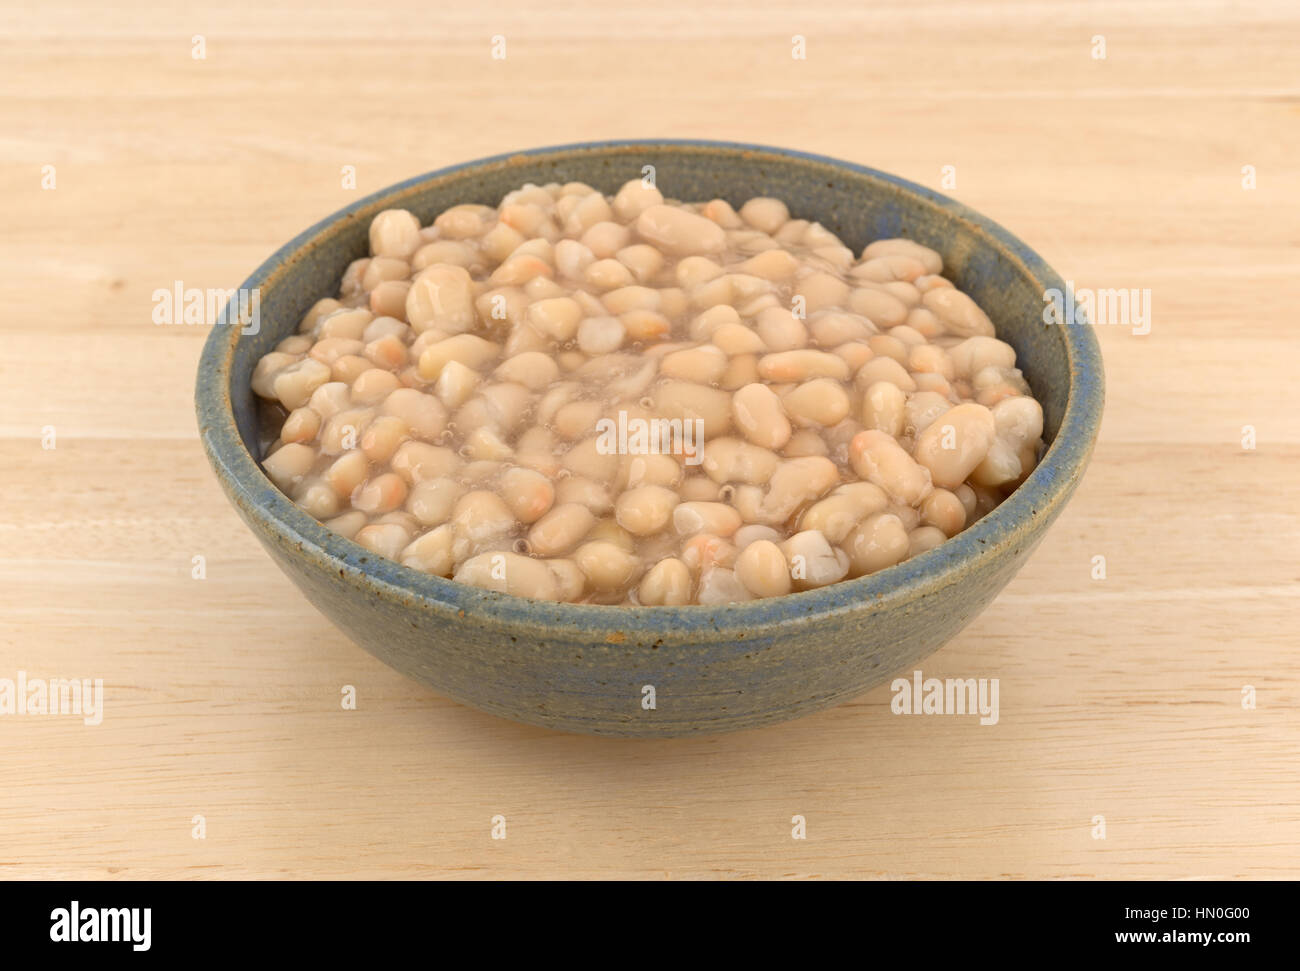 A che serve di organico Fagioli navy in un vecchio recipiente di ceramica in cima a una tavola di legno. Foto Stock